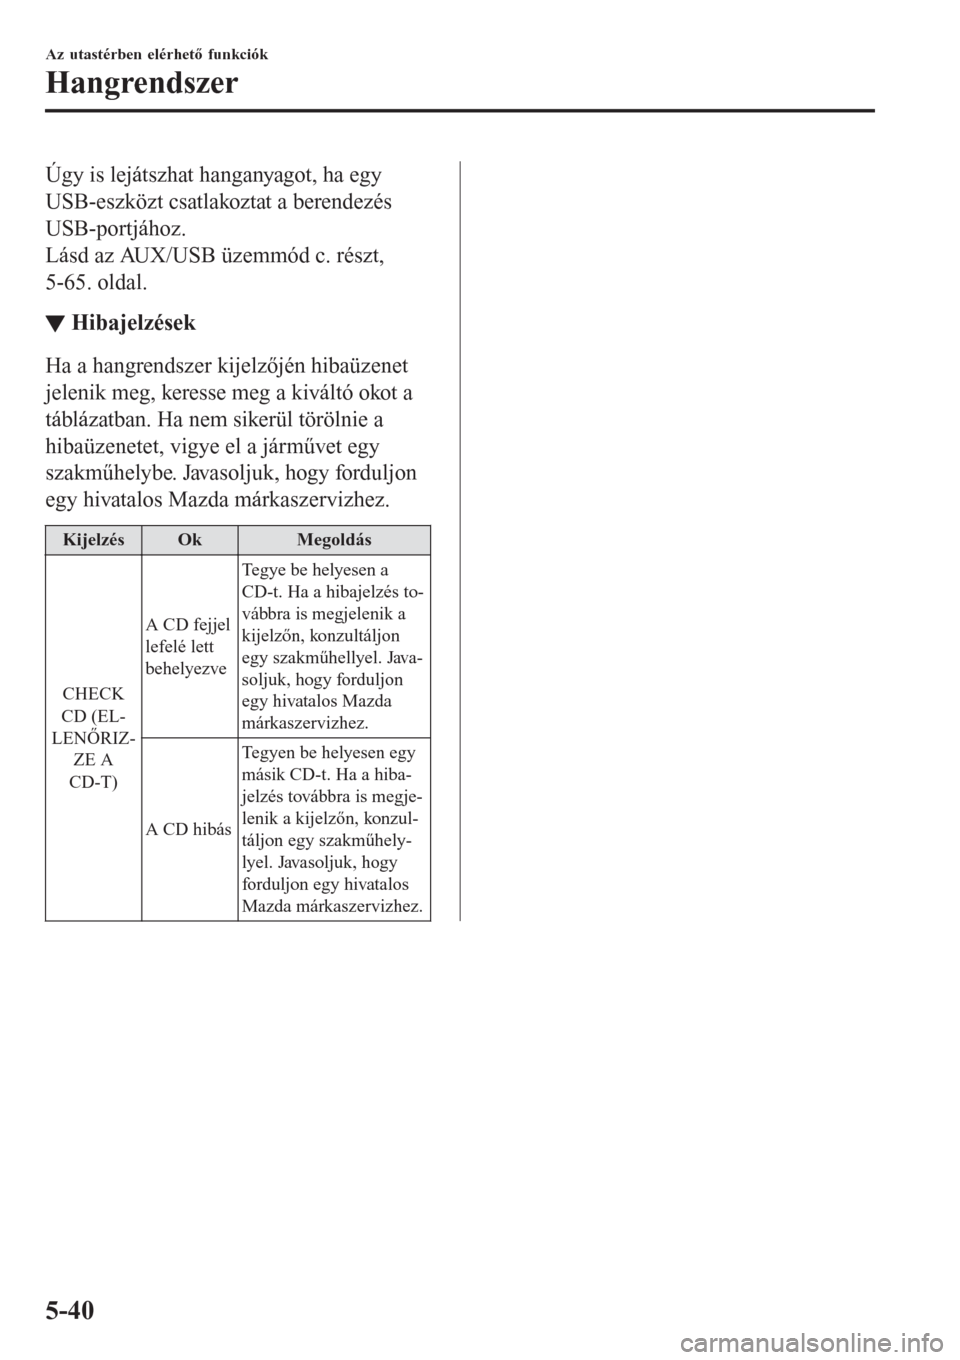 MAZDA MODEL CX-3 2016  Kezelési útmutató (in Hungarian) Úgy is lejátszhat hanganyagot, ha egy
USB-eszközt csatlakoztat a berendezés
USB-portjához.
Lásd az AUX/USB üzemmód c. részt,
5-65. oldal.
▼Hibajelzések
Ha a hangrendszer kijelzőjén hiba�